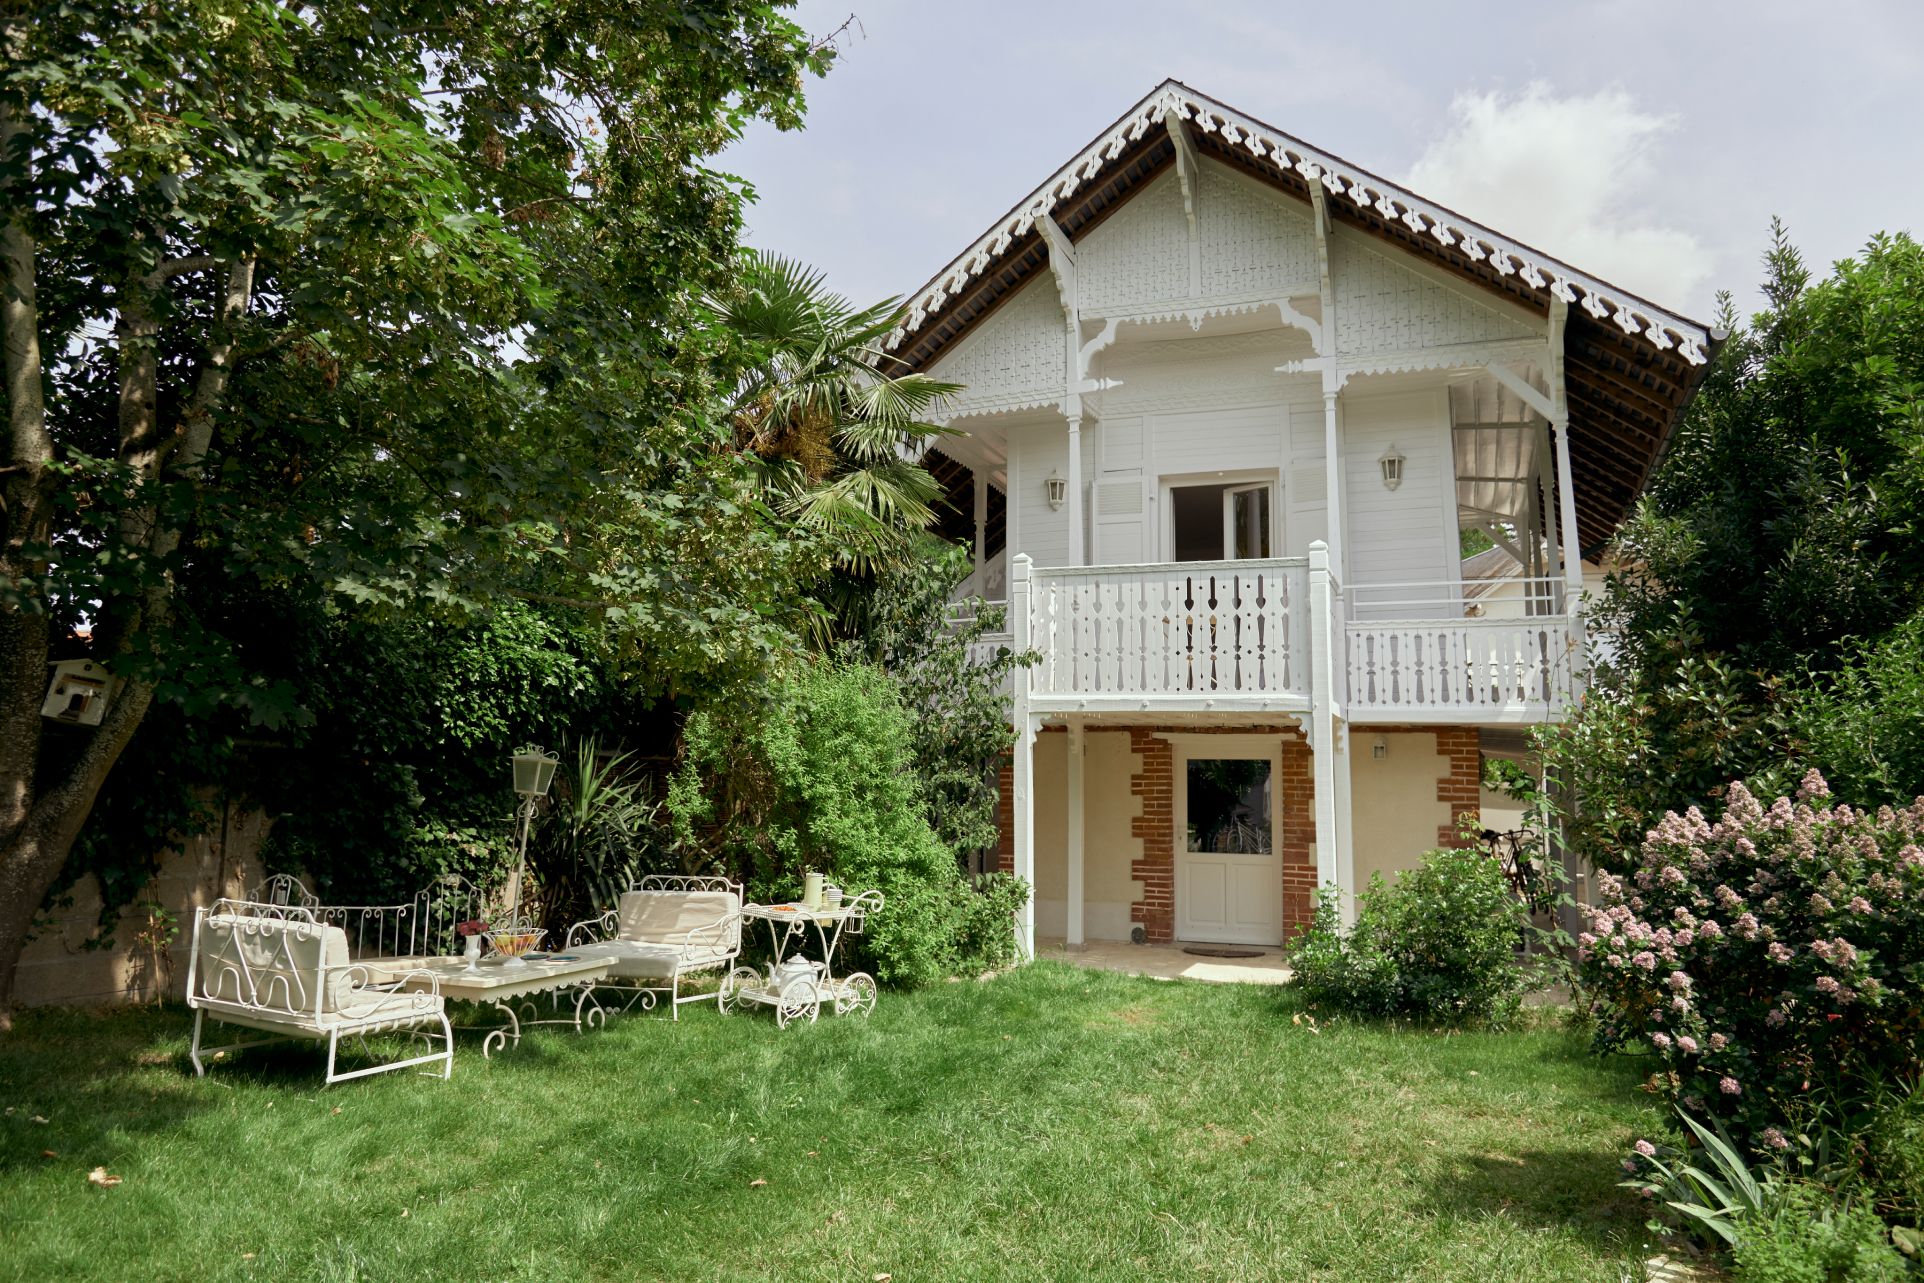 Chalet Olivet blanc dans un style architecturale suisse, avec un jolie jardin champetre